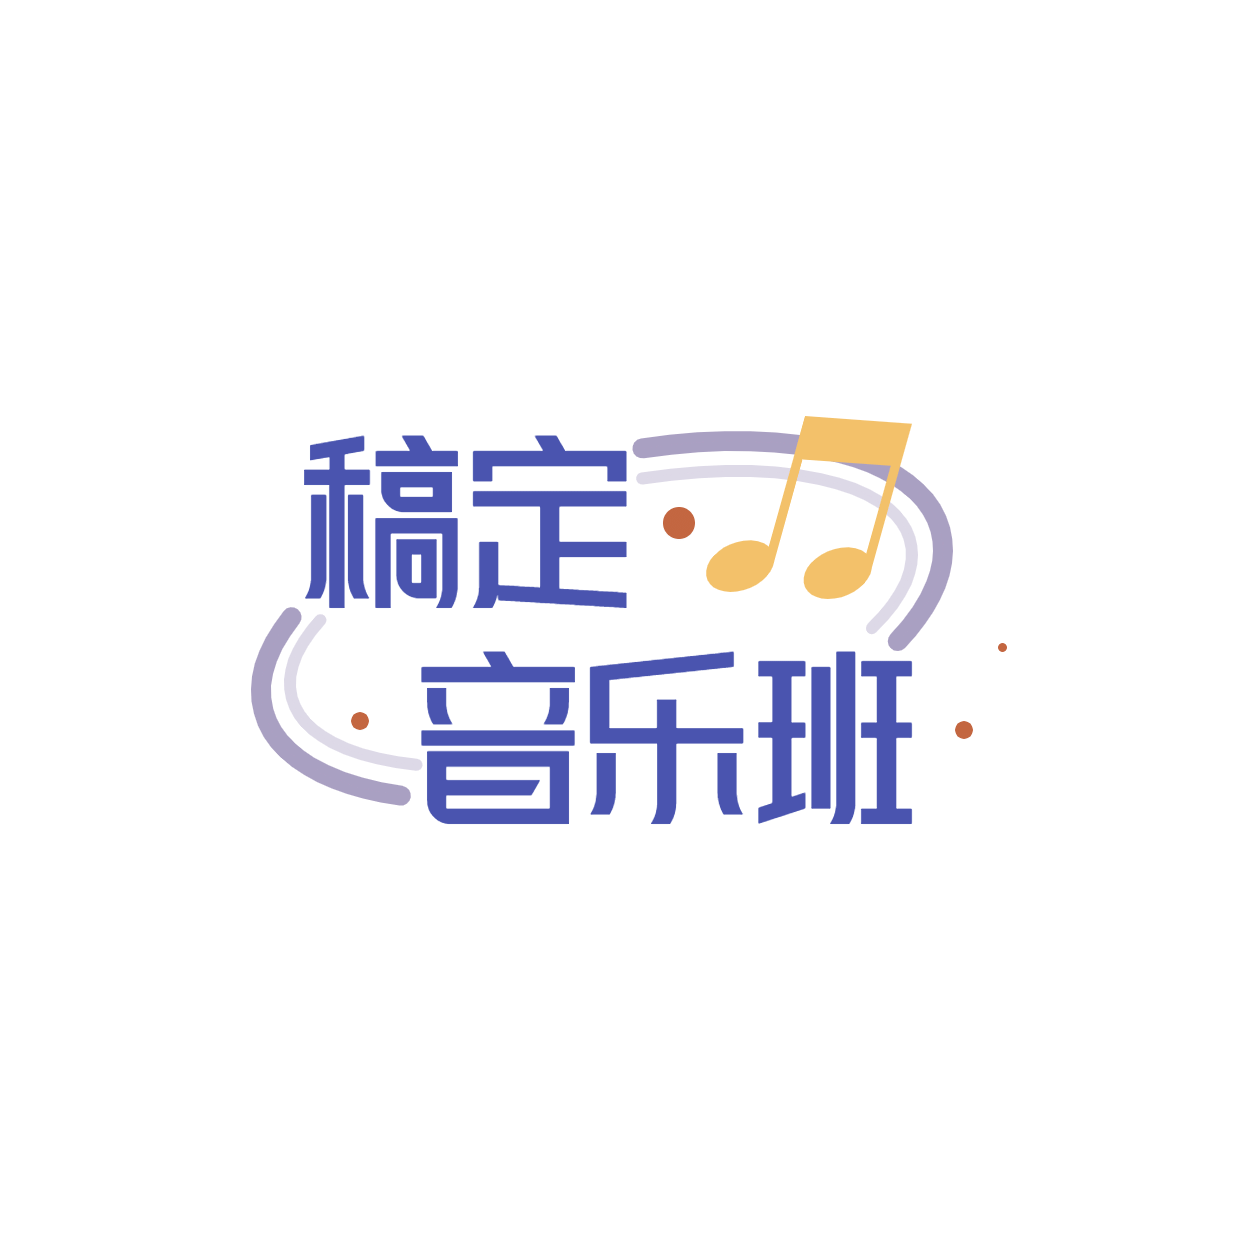 教育培训机构音乐班logo预览效果